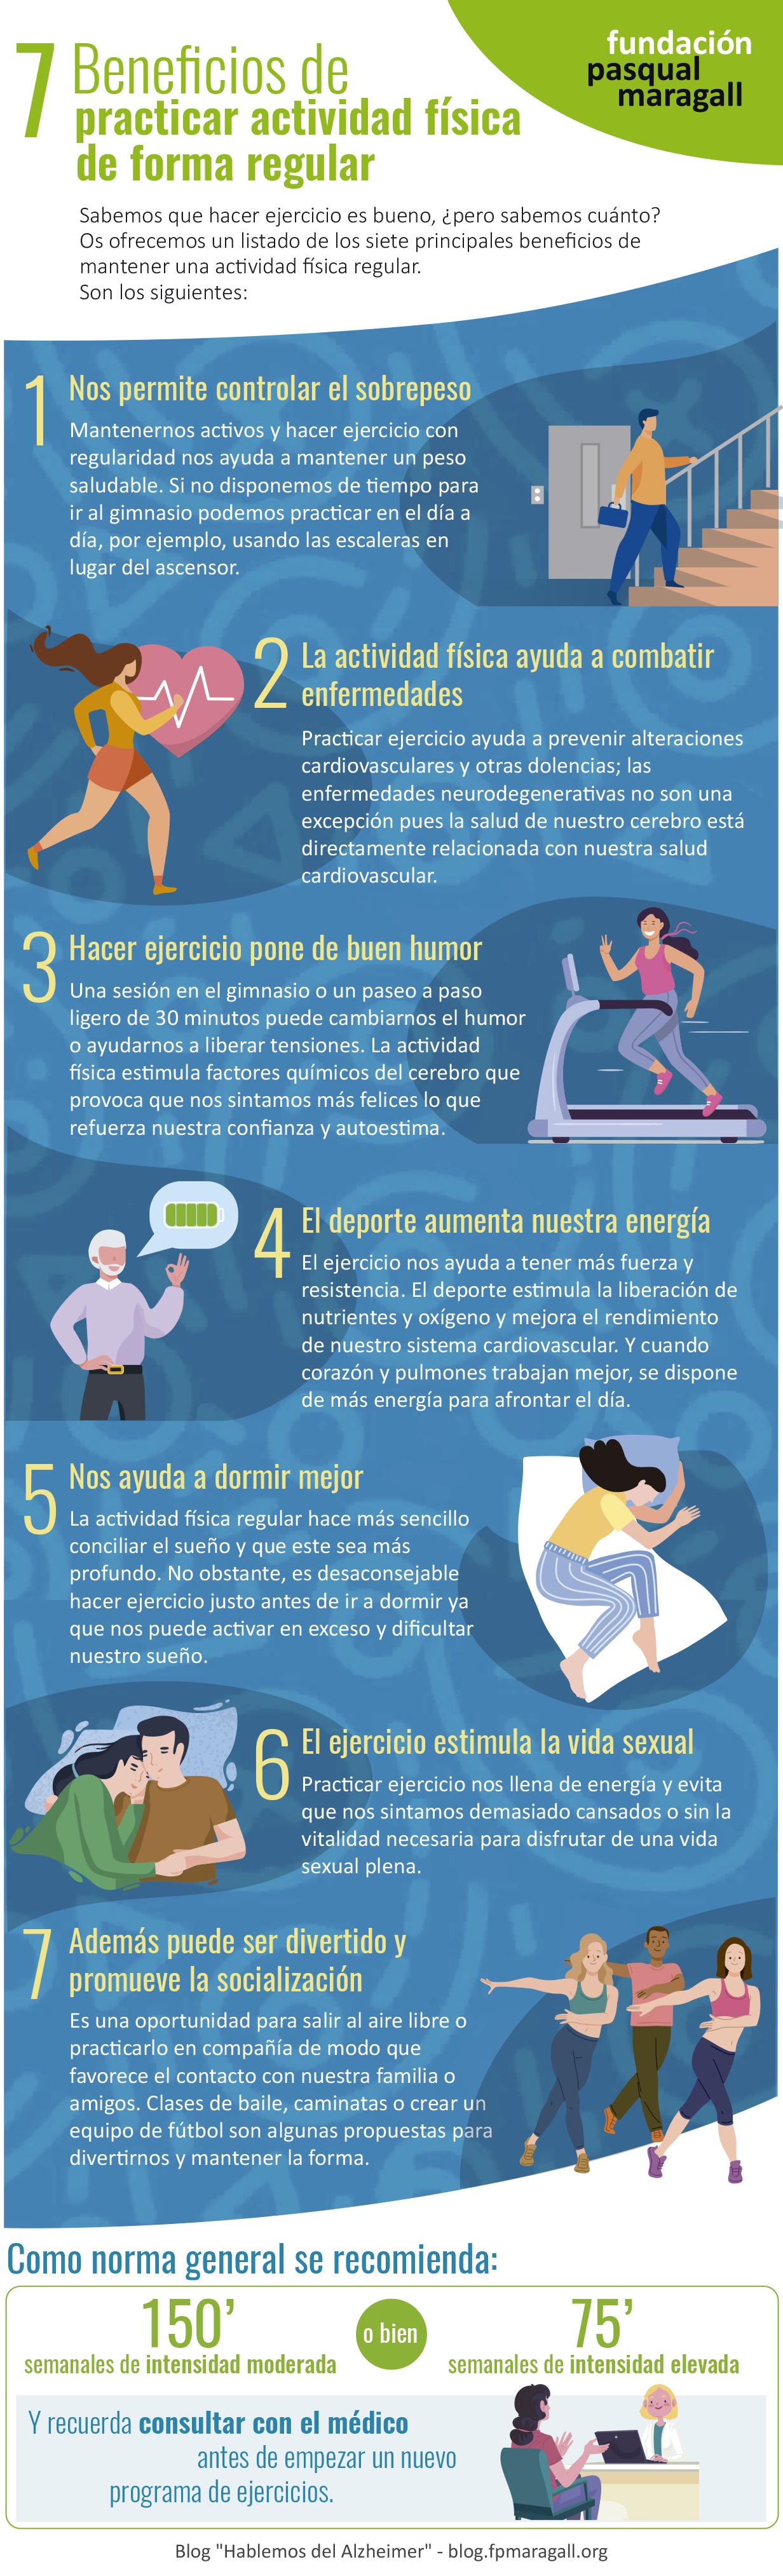 7 beneficios de practicar actividad física de forma regular